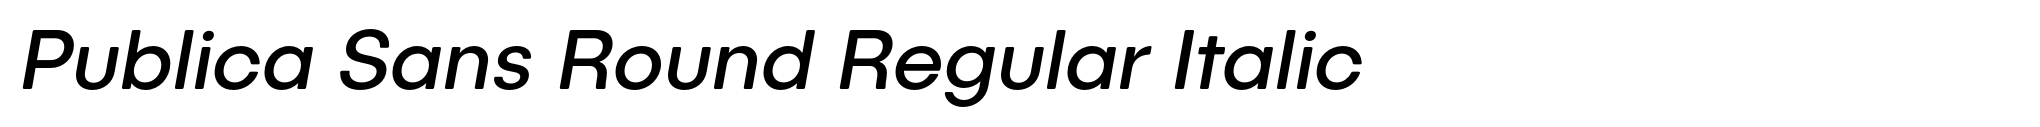 Publica Sans Round Regular Italic image